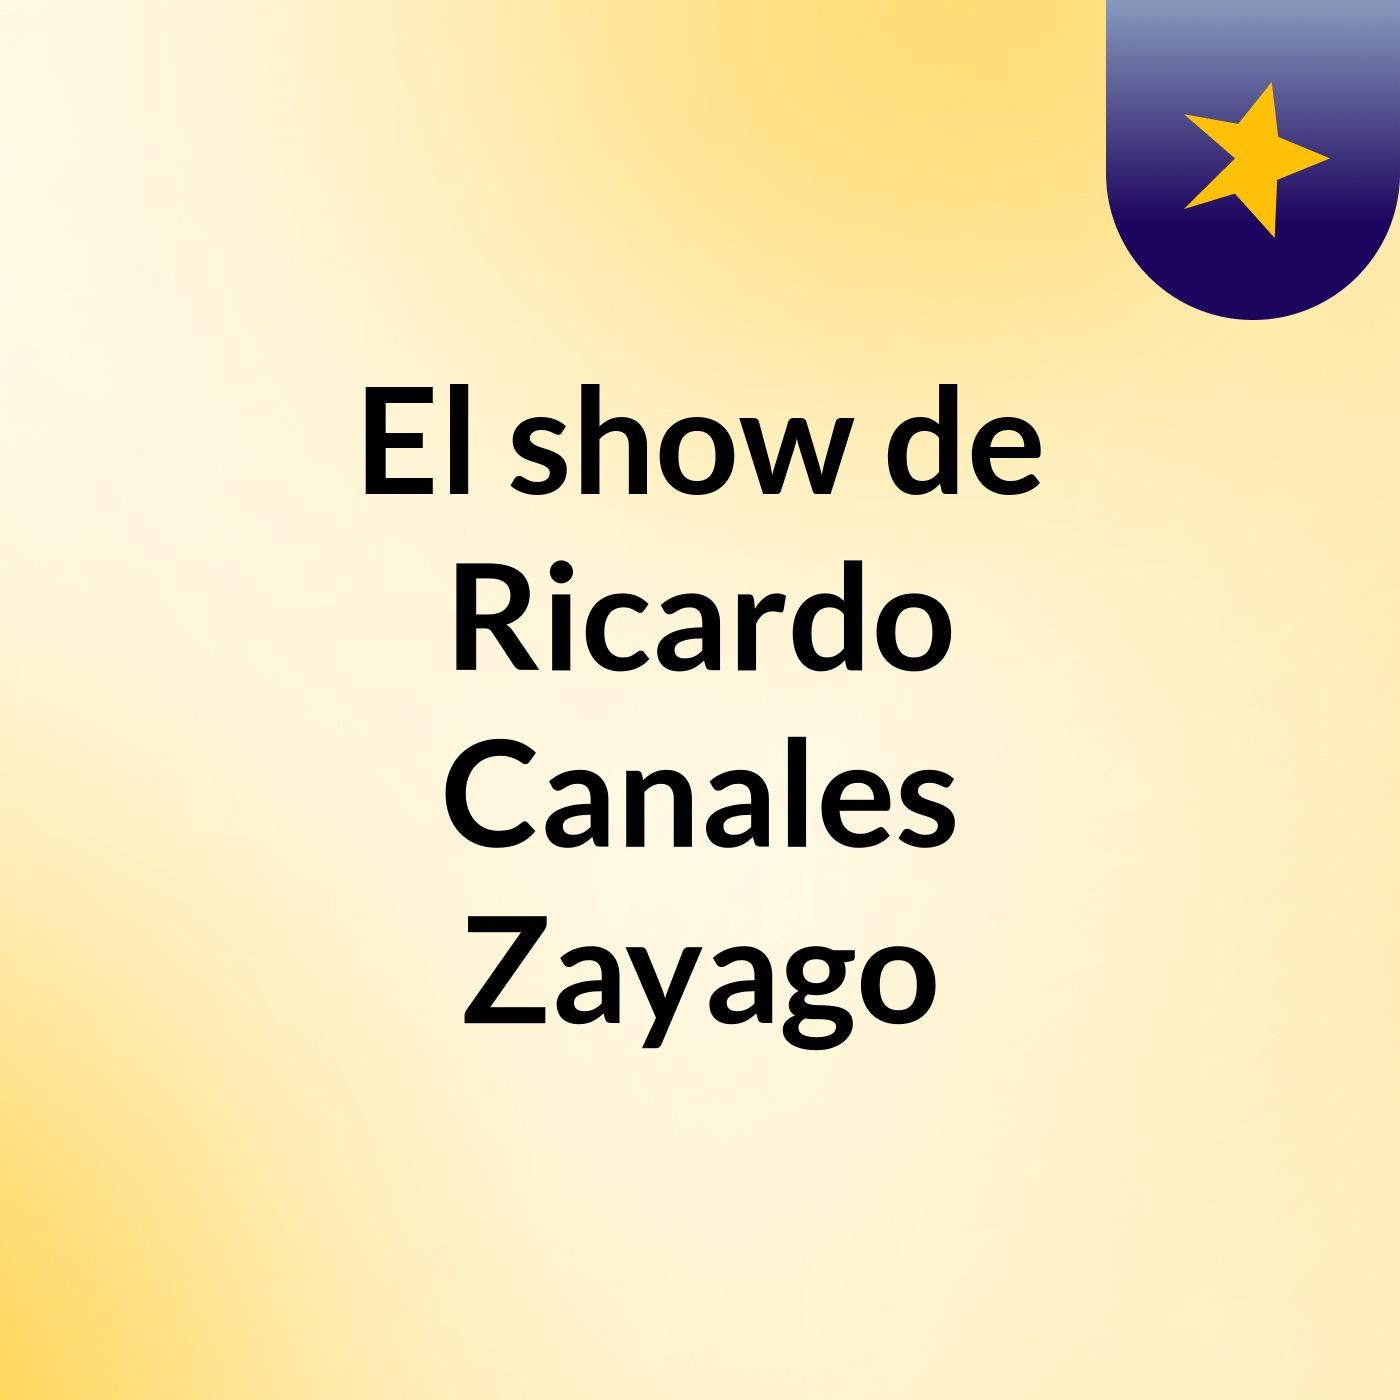 Episodio 6 - El show de Ricardo Canales Zayago